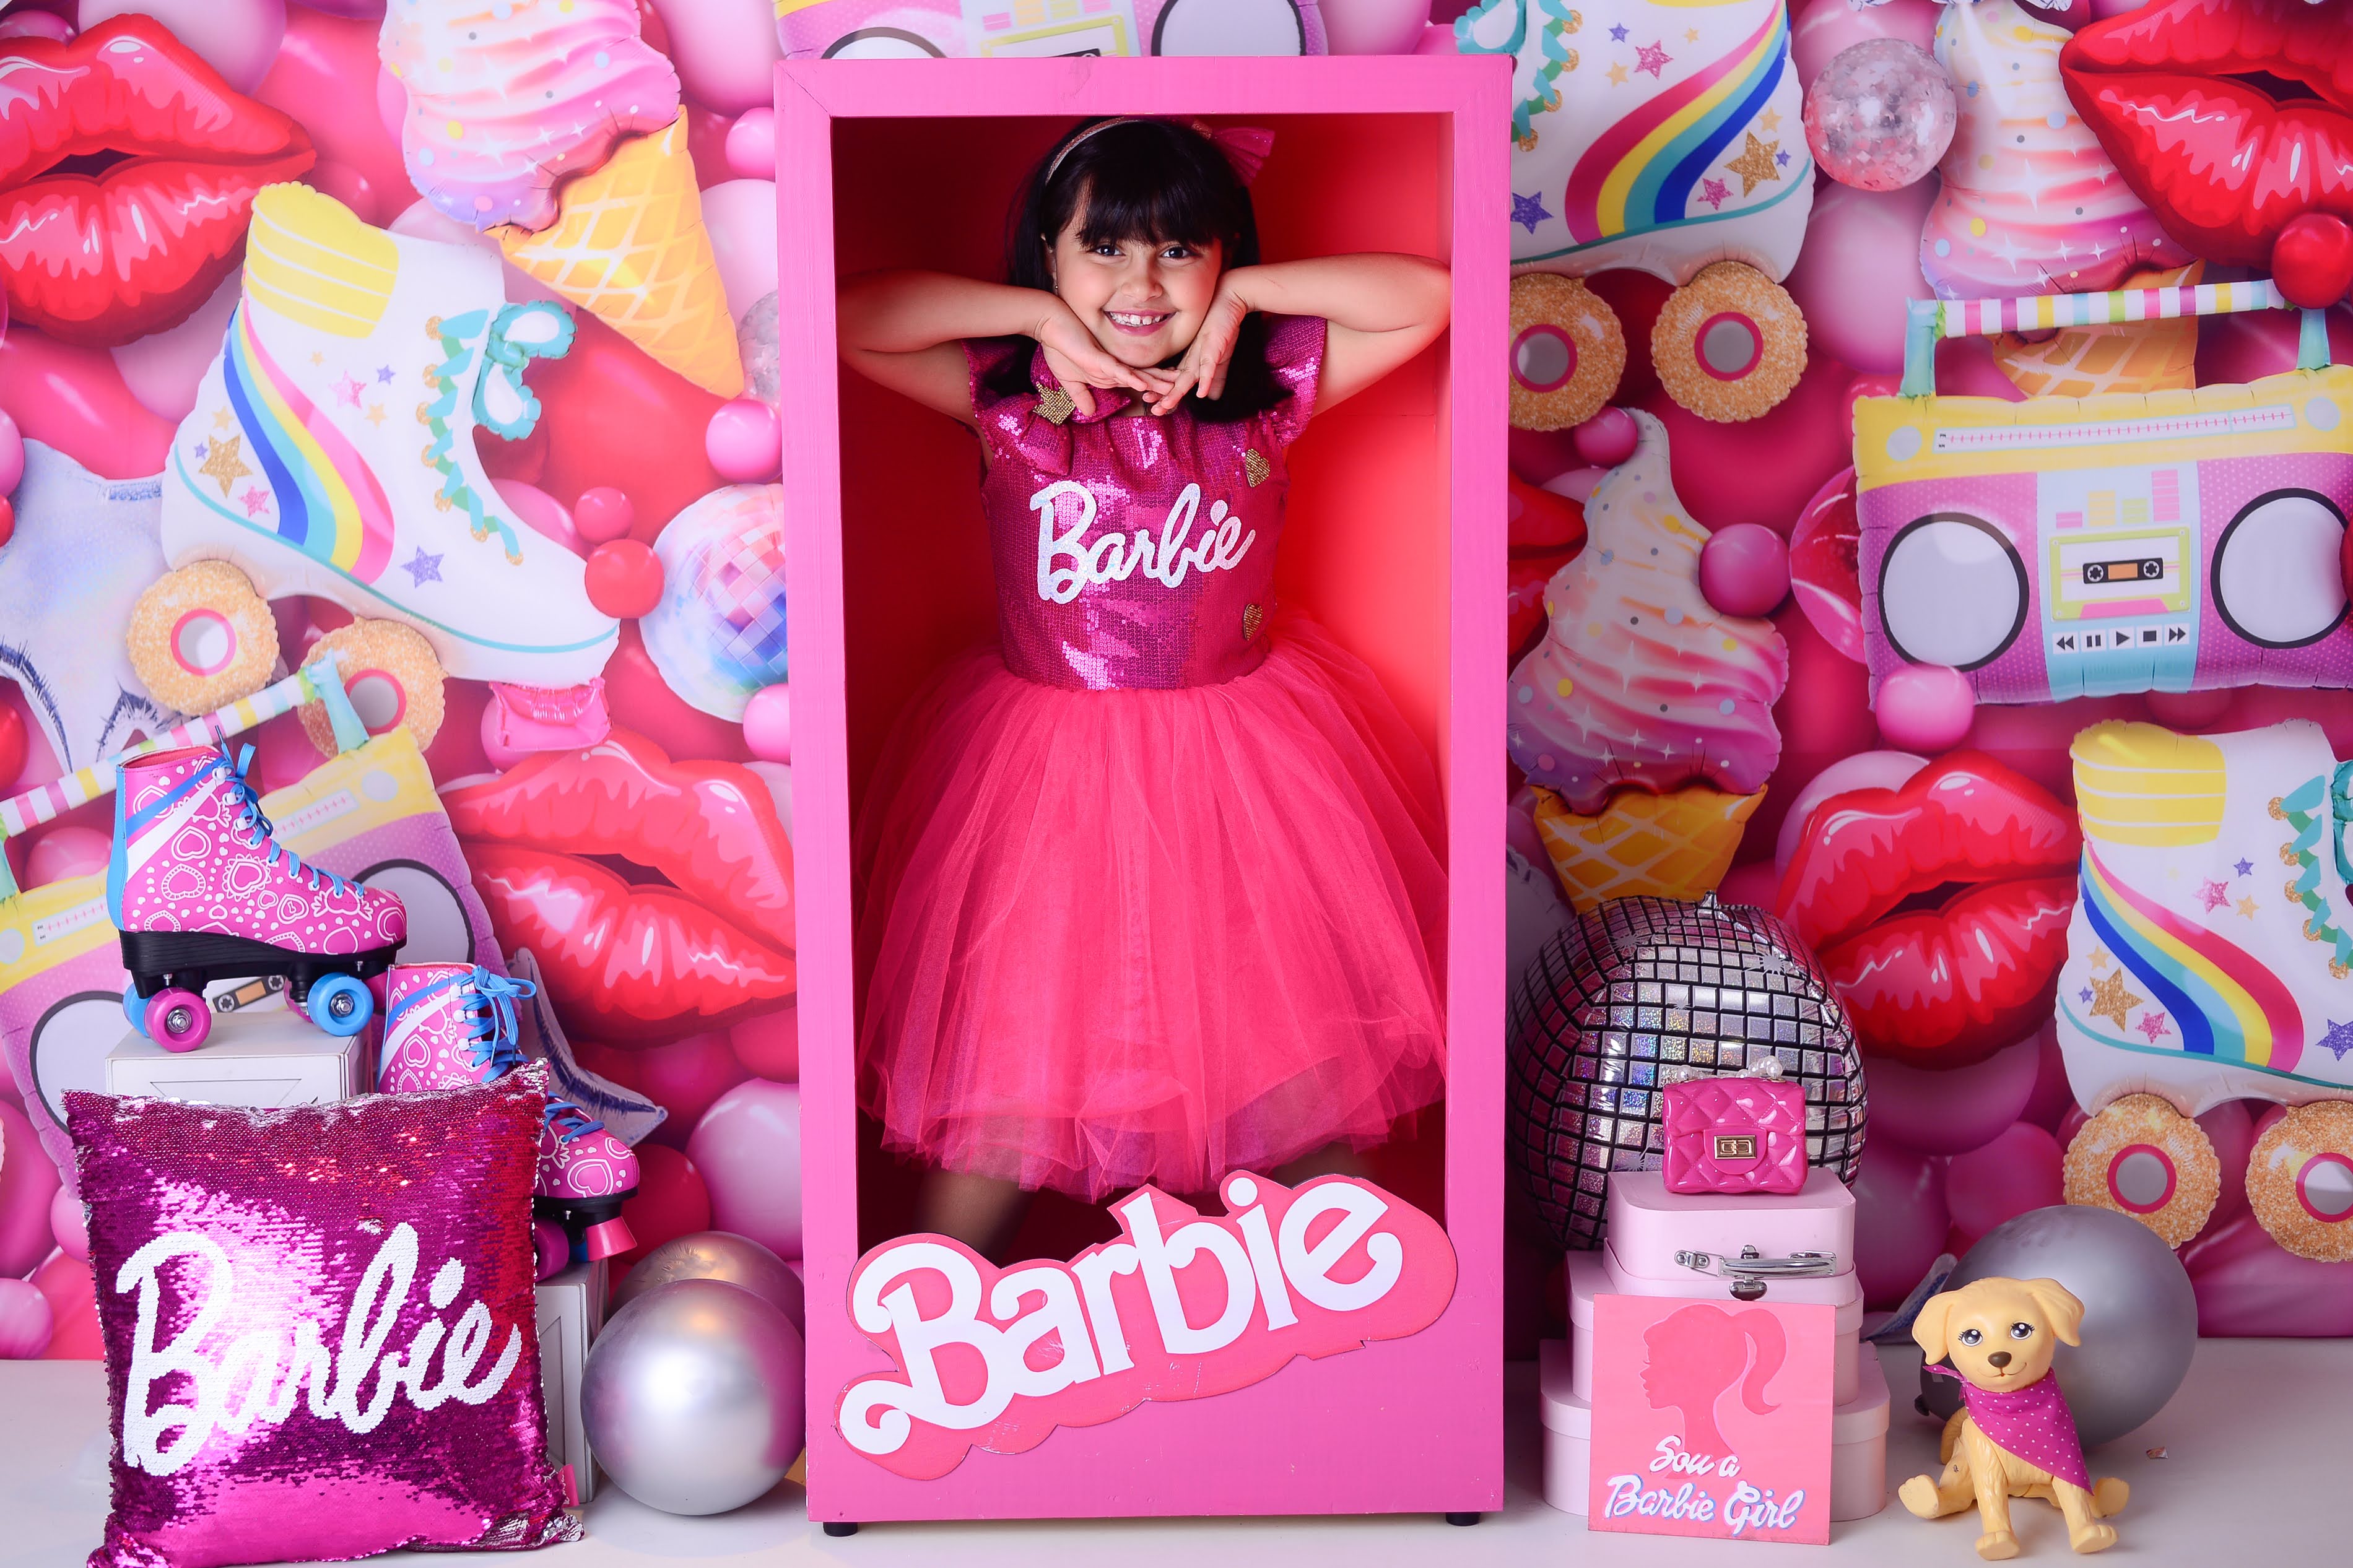 Ensaio fotográfico pré-aniversário: Barbie - Desafio MamãeDesafio Mamãe